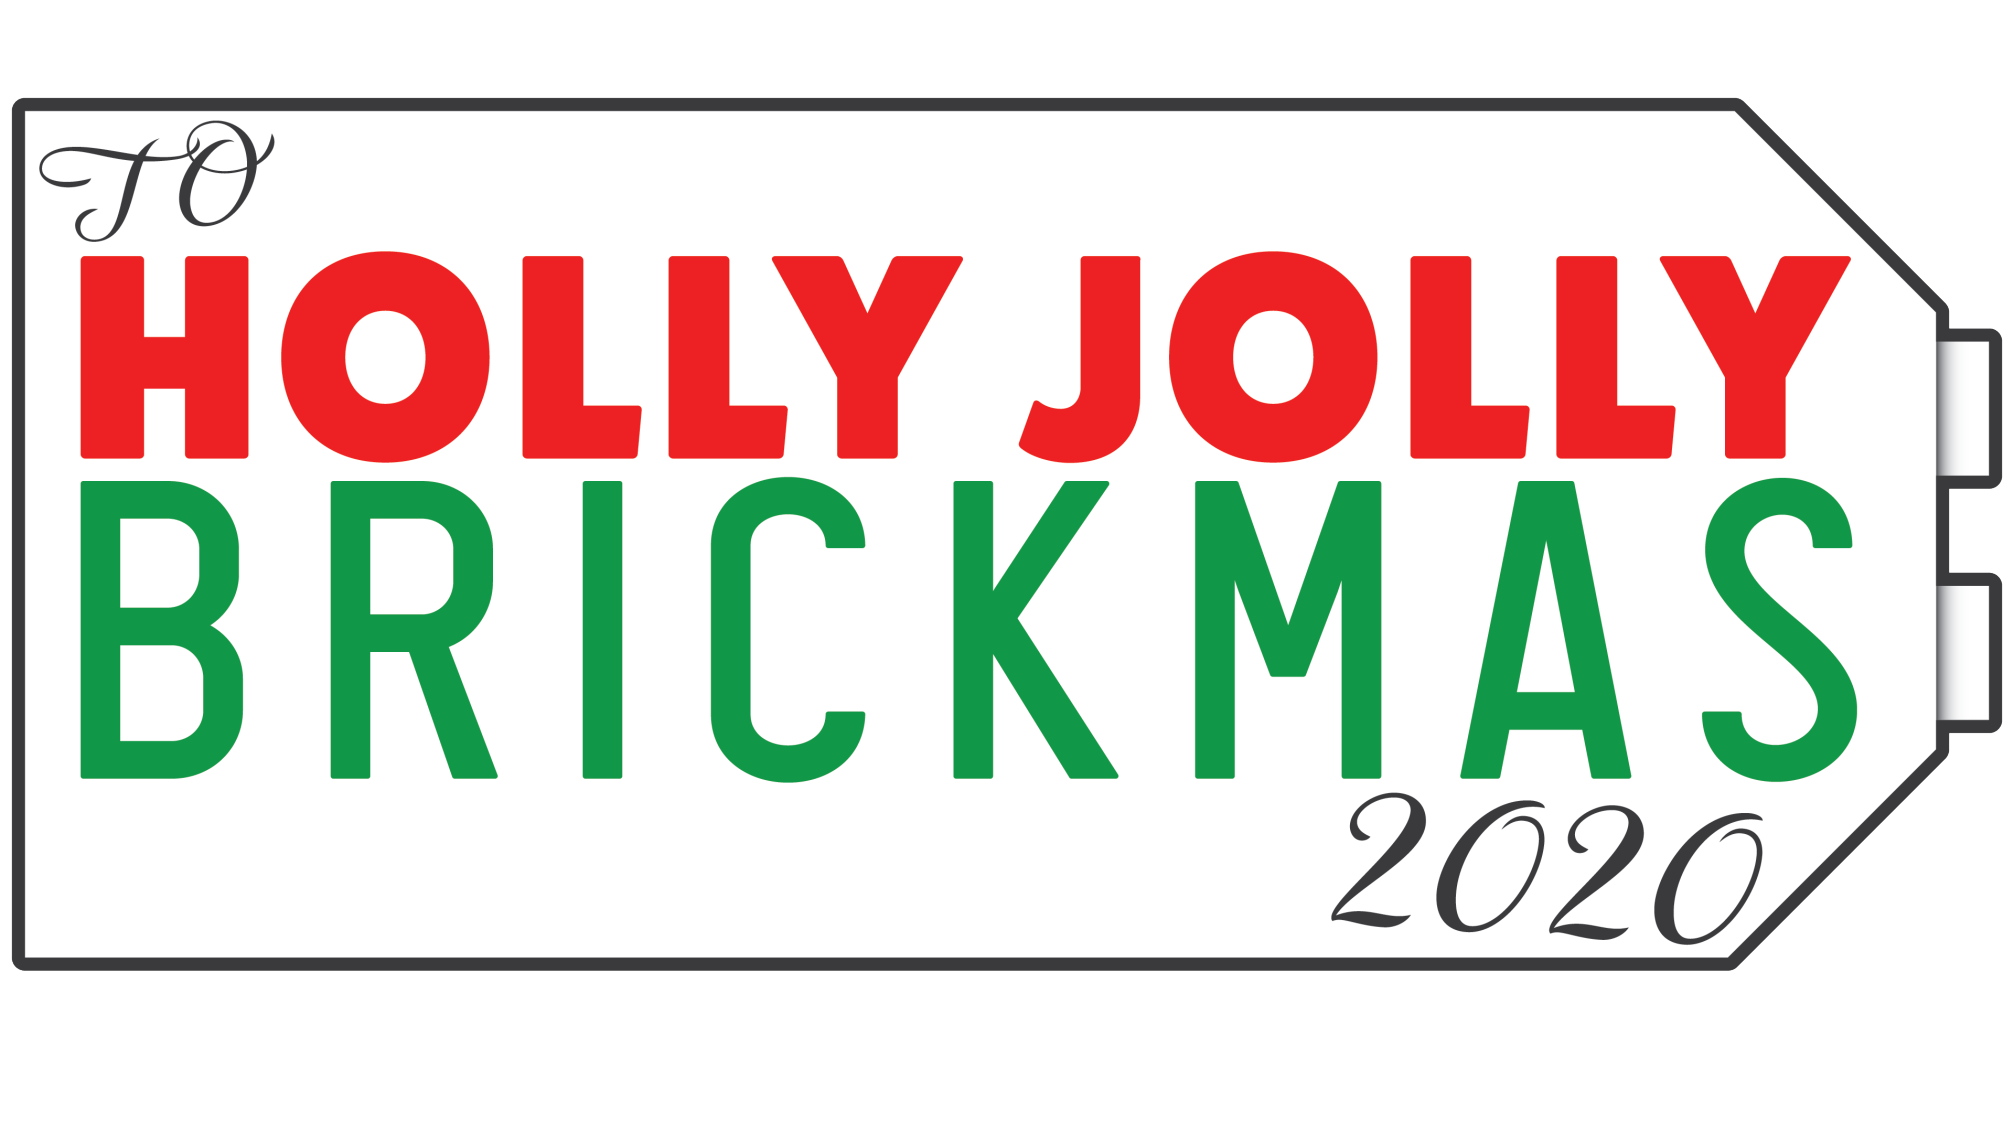 "Holly Jolly Brickmas" Community Project